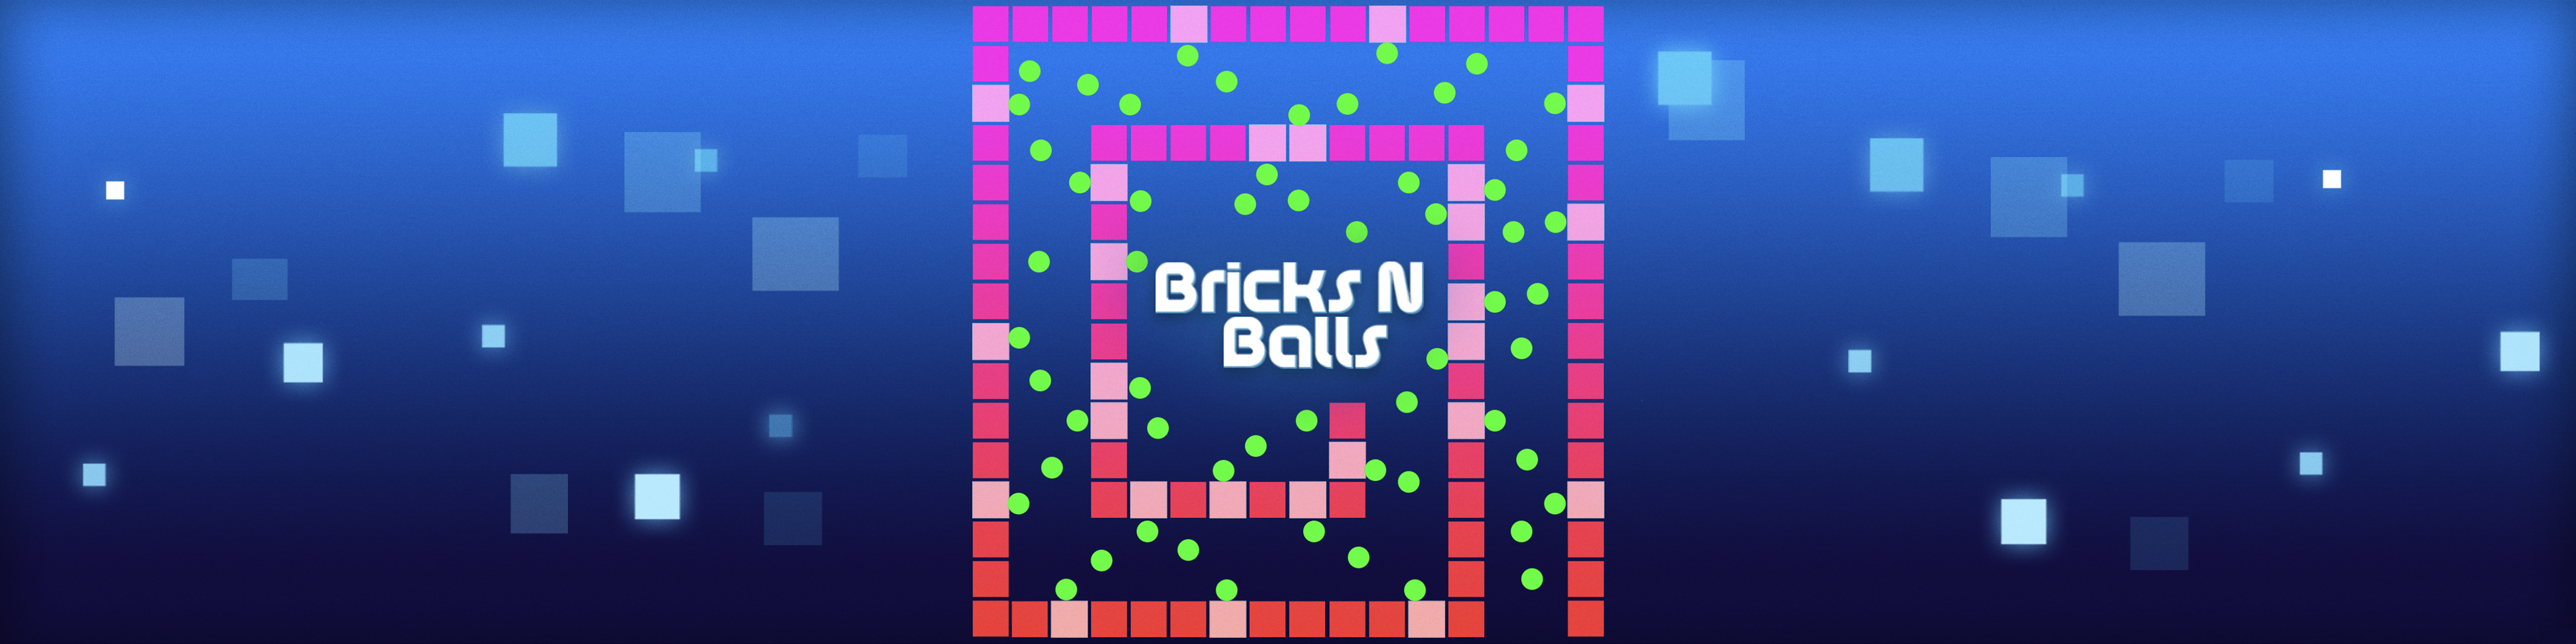 bricks n balls which ball